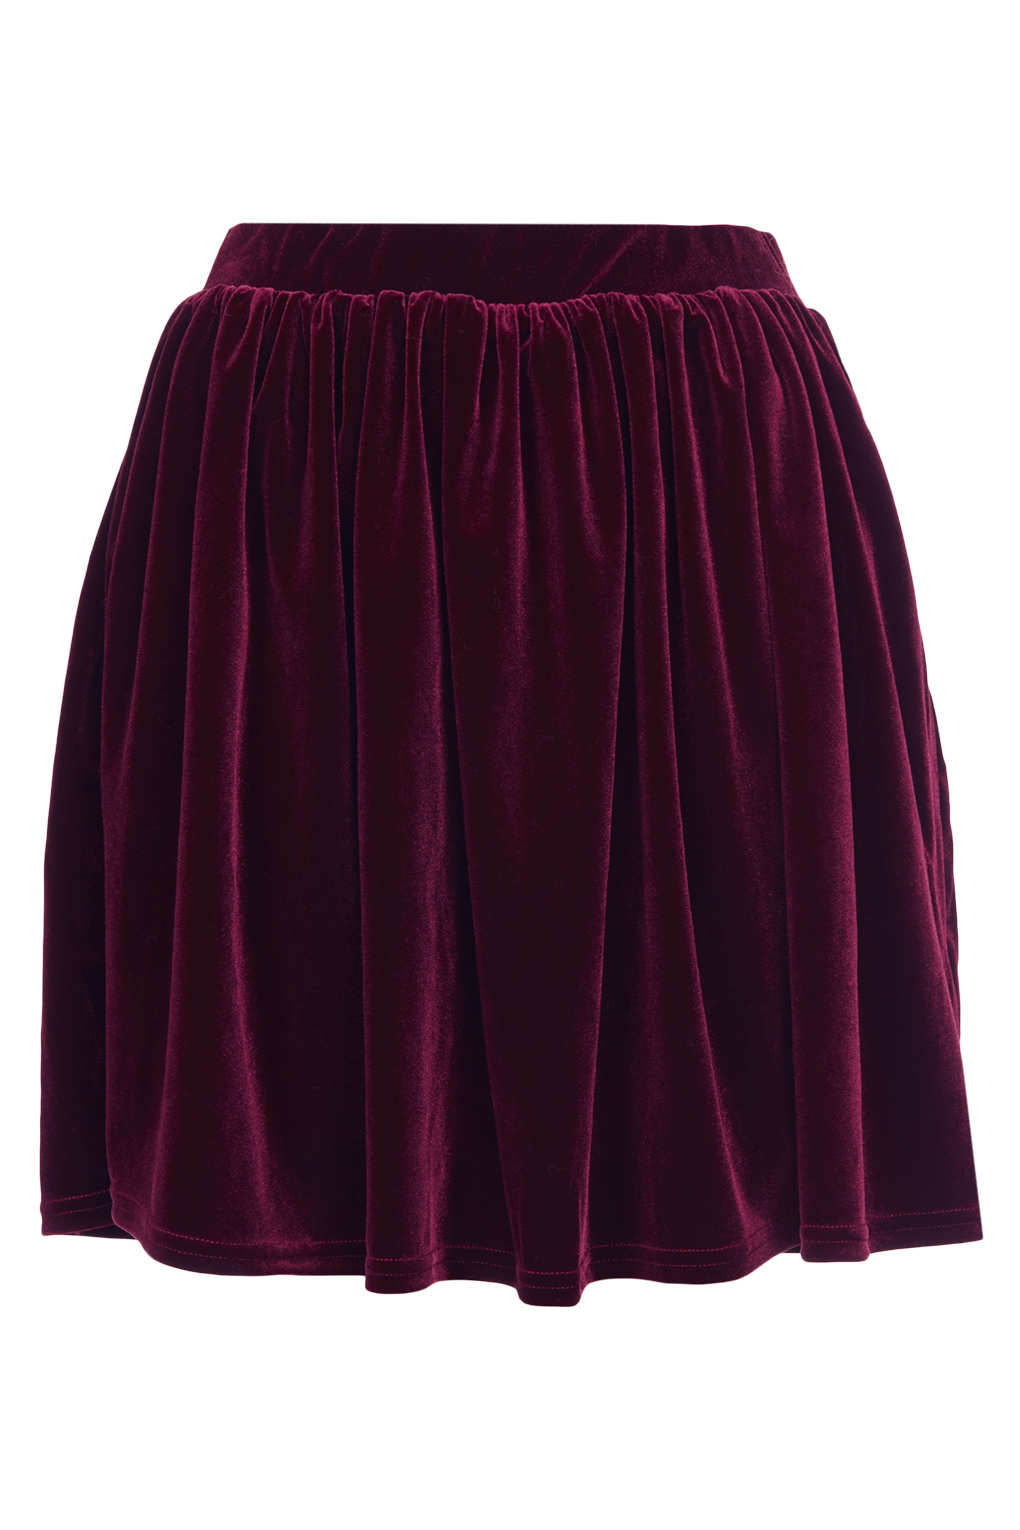 Lyst - Topshop Burgundy Velvet Skater Skirt in Purple